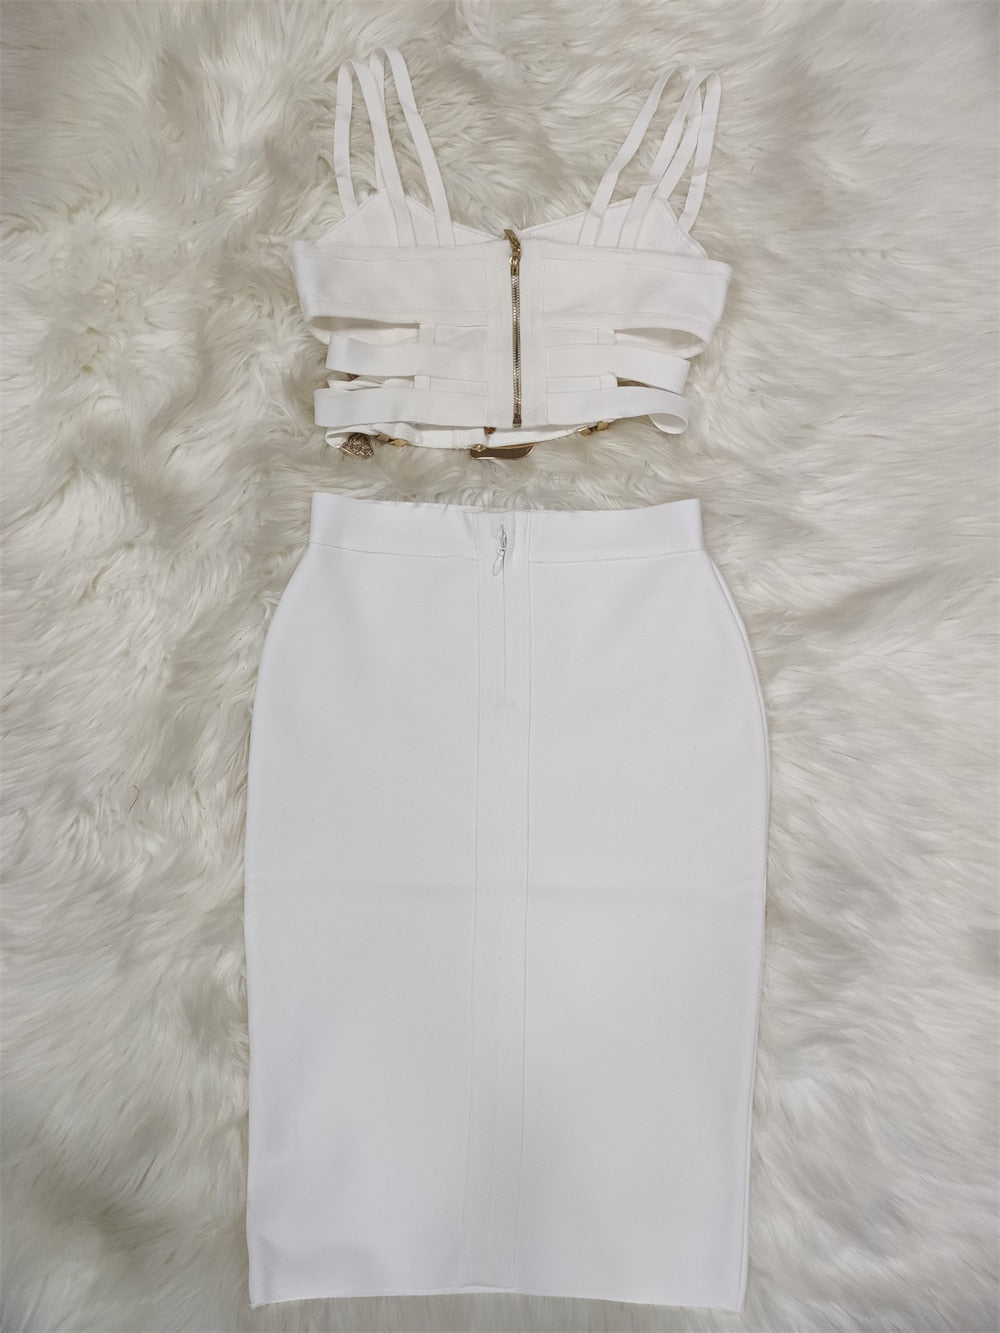 Expensive Taste Bandage Skirt Set Fashion Closet Clothing